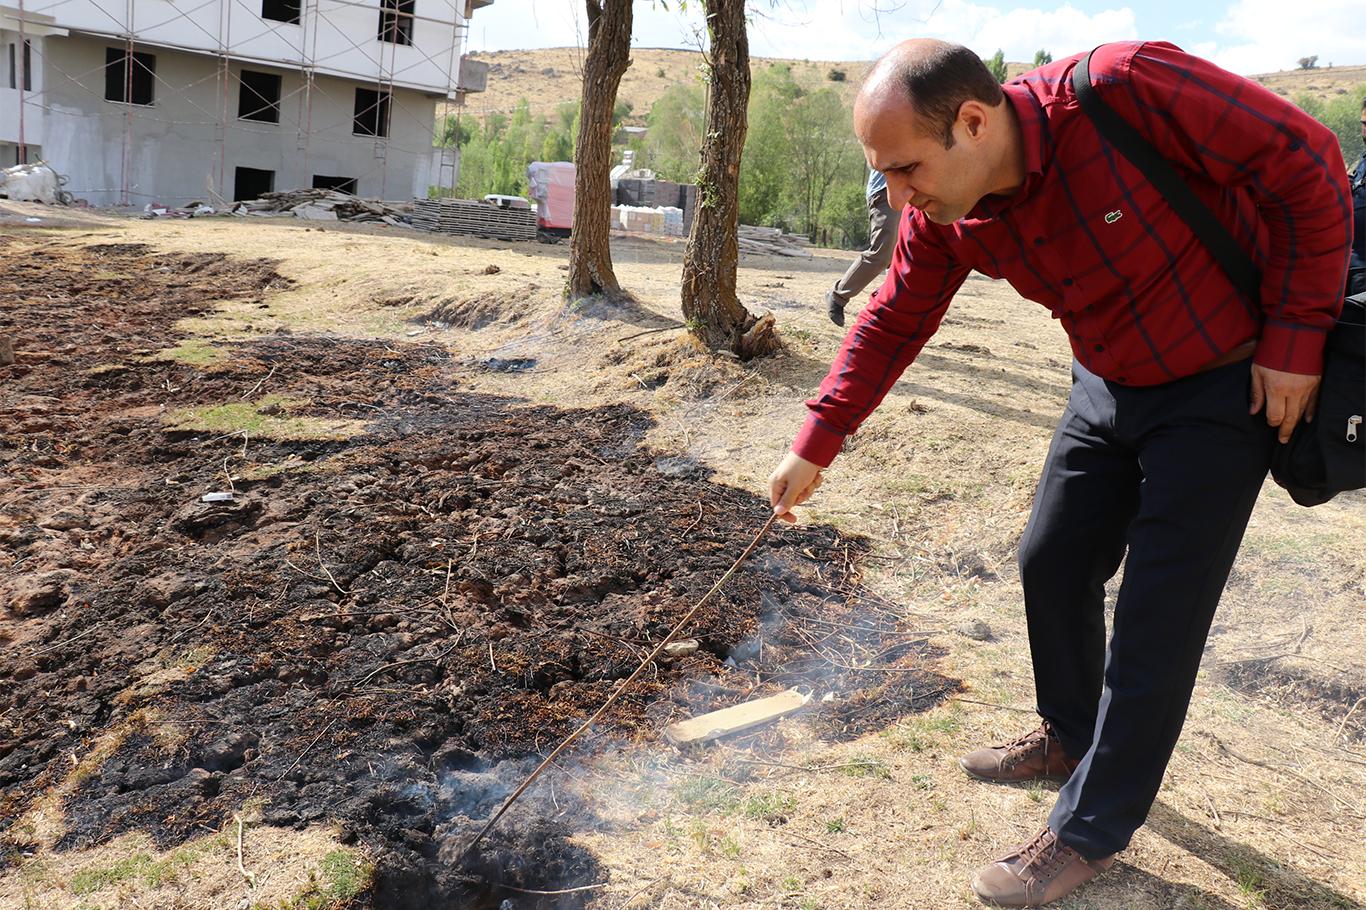 Bingöl'deki esrarengiz yangının nedeni "çürüyen bitki ve hava teması"  